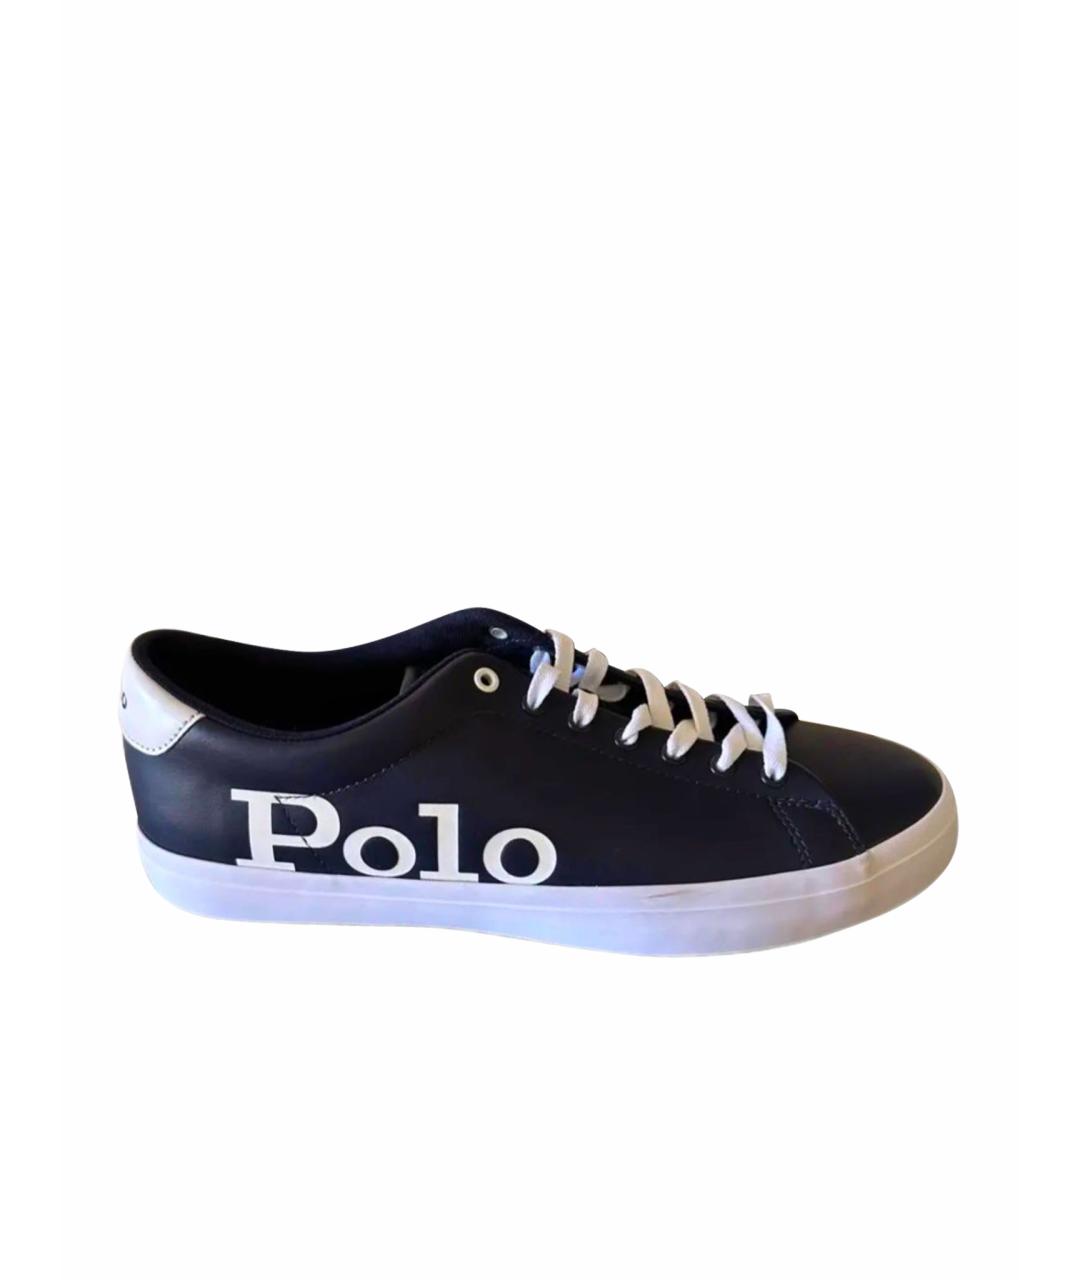 POLO RALPH LAUREN Темно-синие кожаные низкие кроссовки / кеды, фото 1